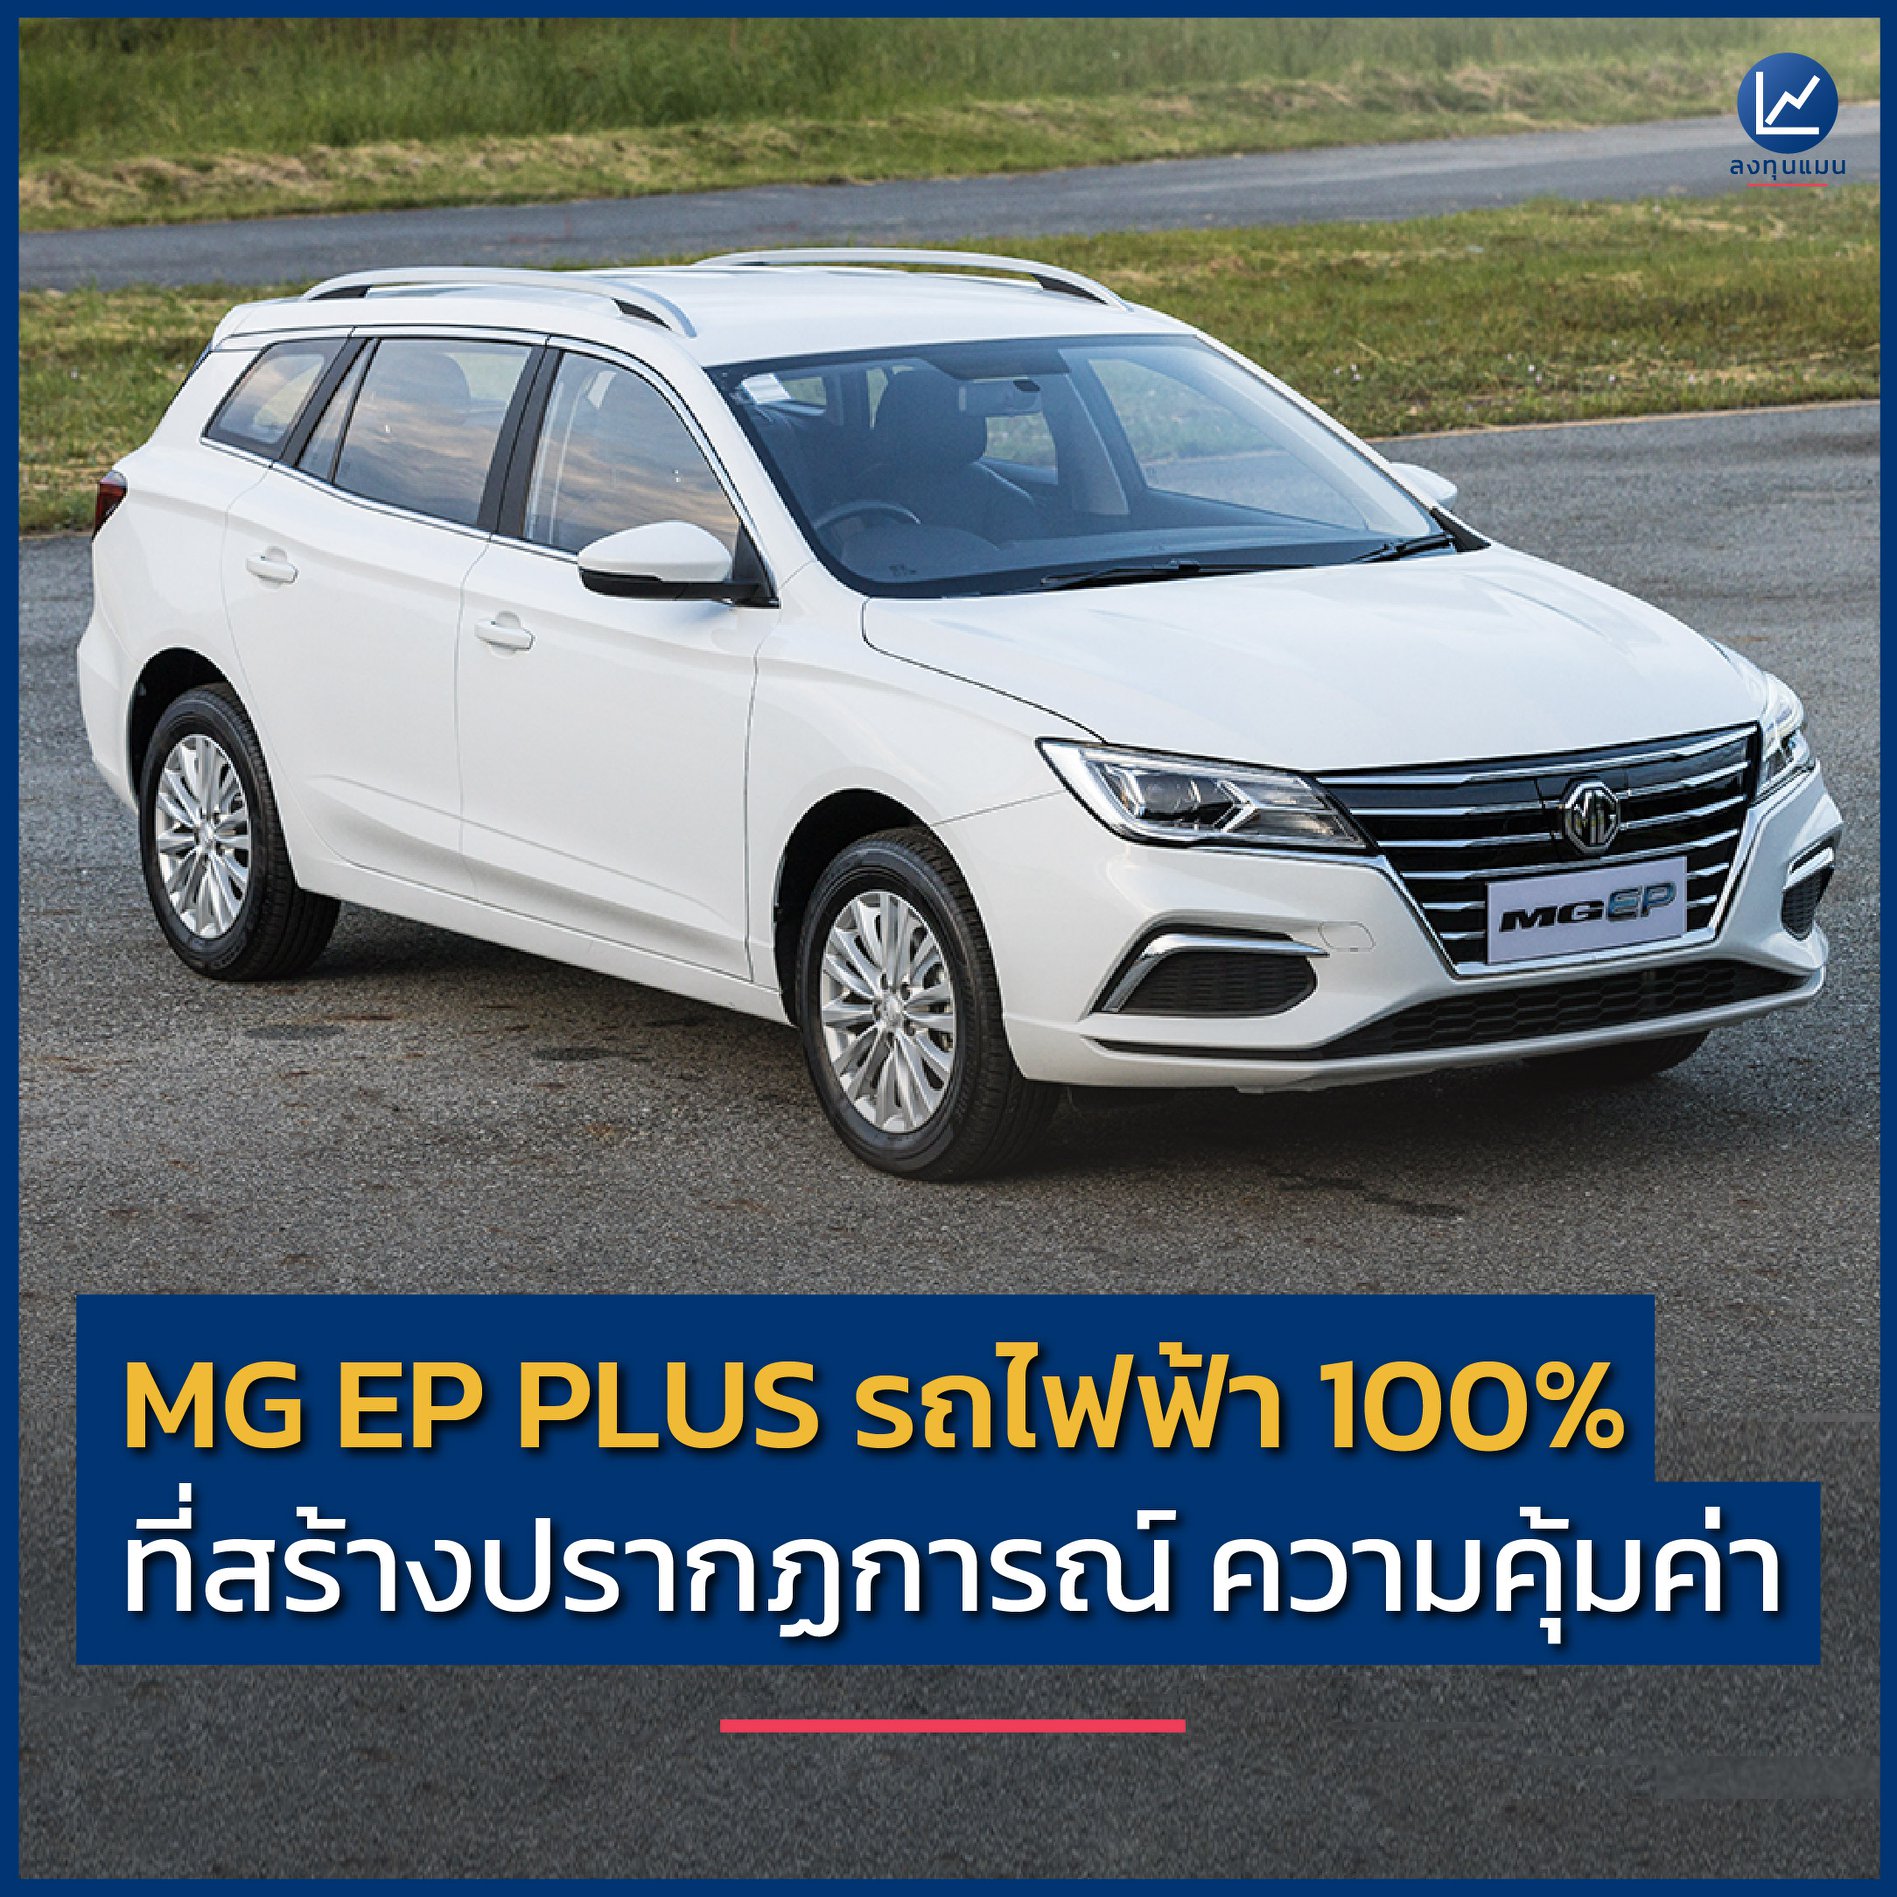 MG EP PLUS รถไฟฟ้า 100% ที่สร้างปรากฏการณ์ ความคุ้มค่า MG X ลงทุนแมน เชื่อหรือไม่ว่า ในระยะเวลา 2 ปี MG ขายรถยนต์ไฟฟ้าในเมืองไทยไปแล้วกว่า 3,000 คัน และครองส่วนแบ่งทางการตลาดสูงกว่า 90%